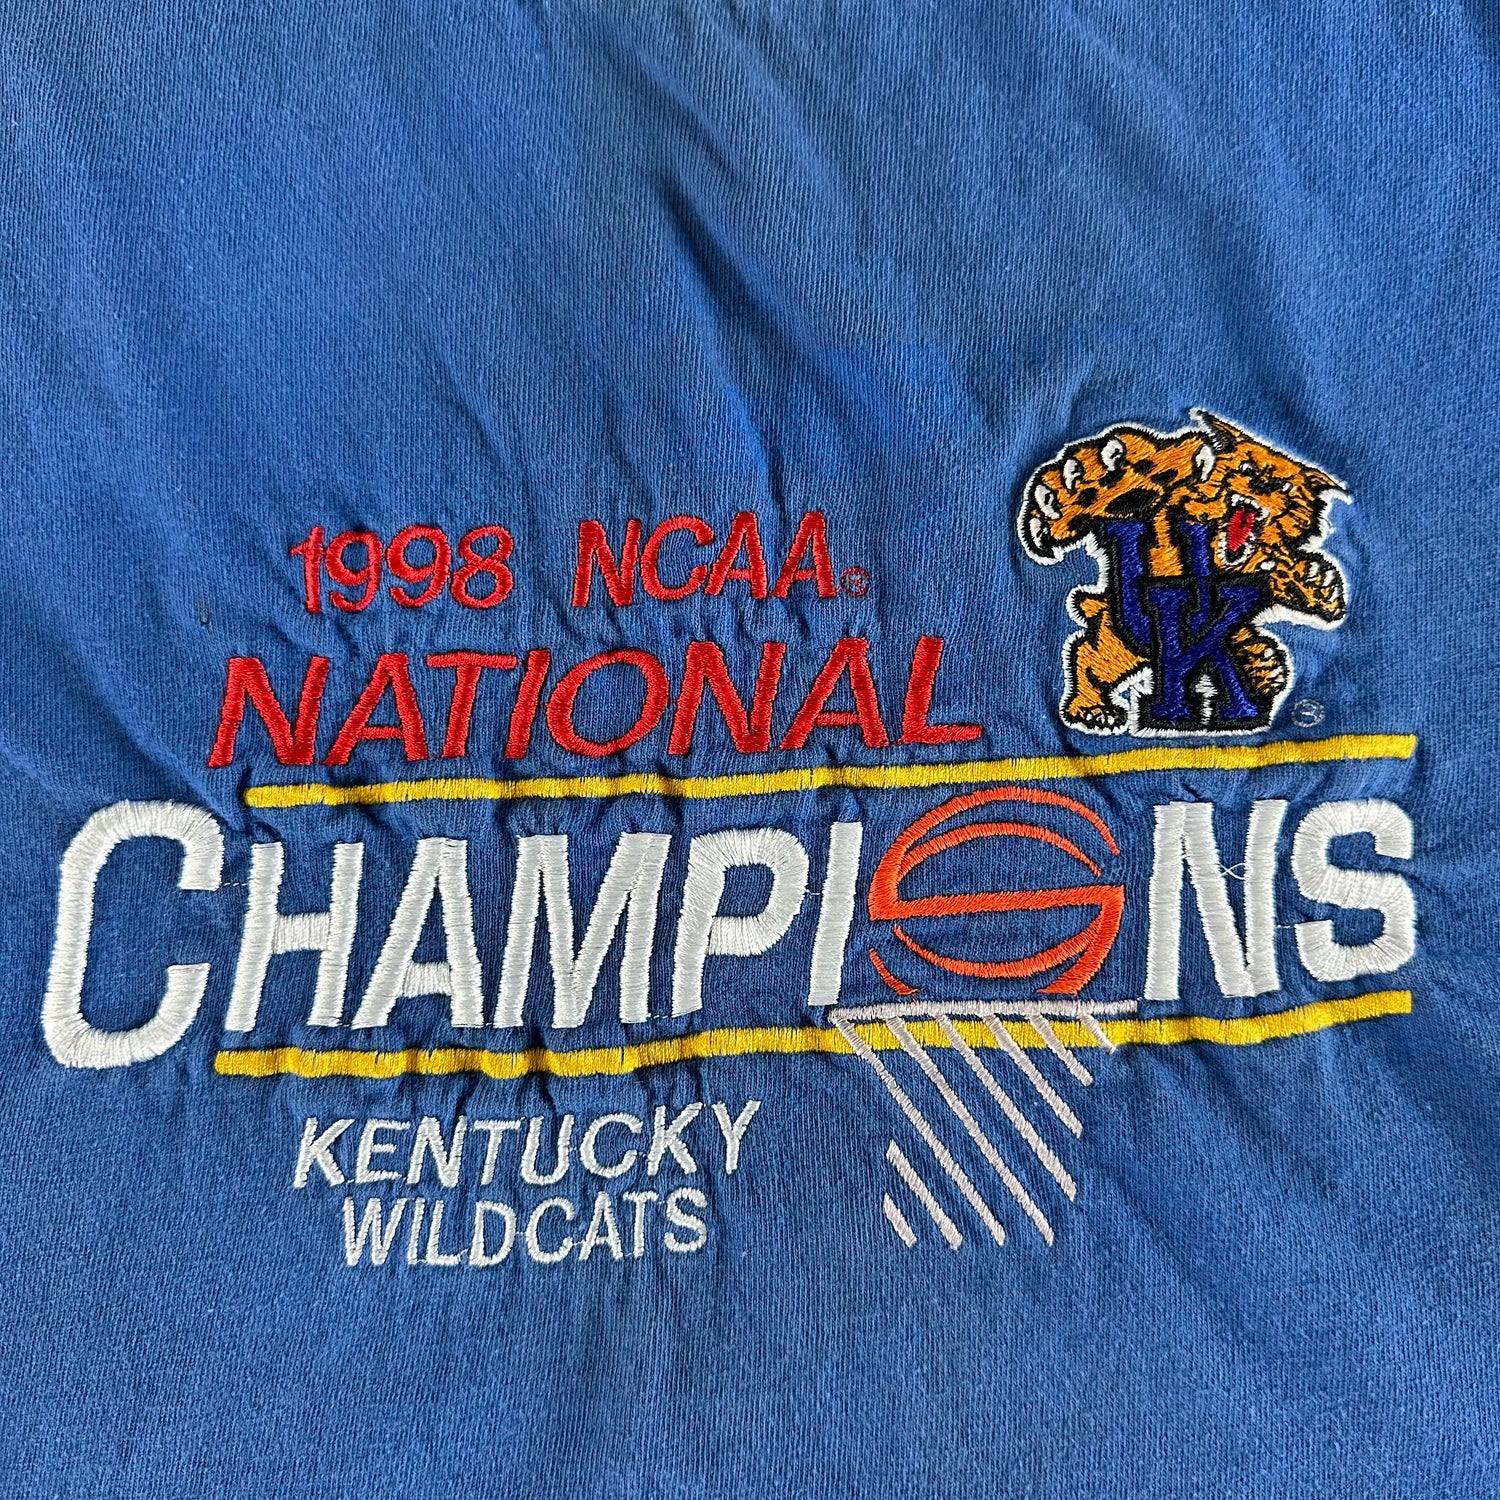 Vintage 1998 University of Kentucky T-shirt size XL